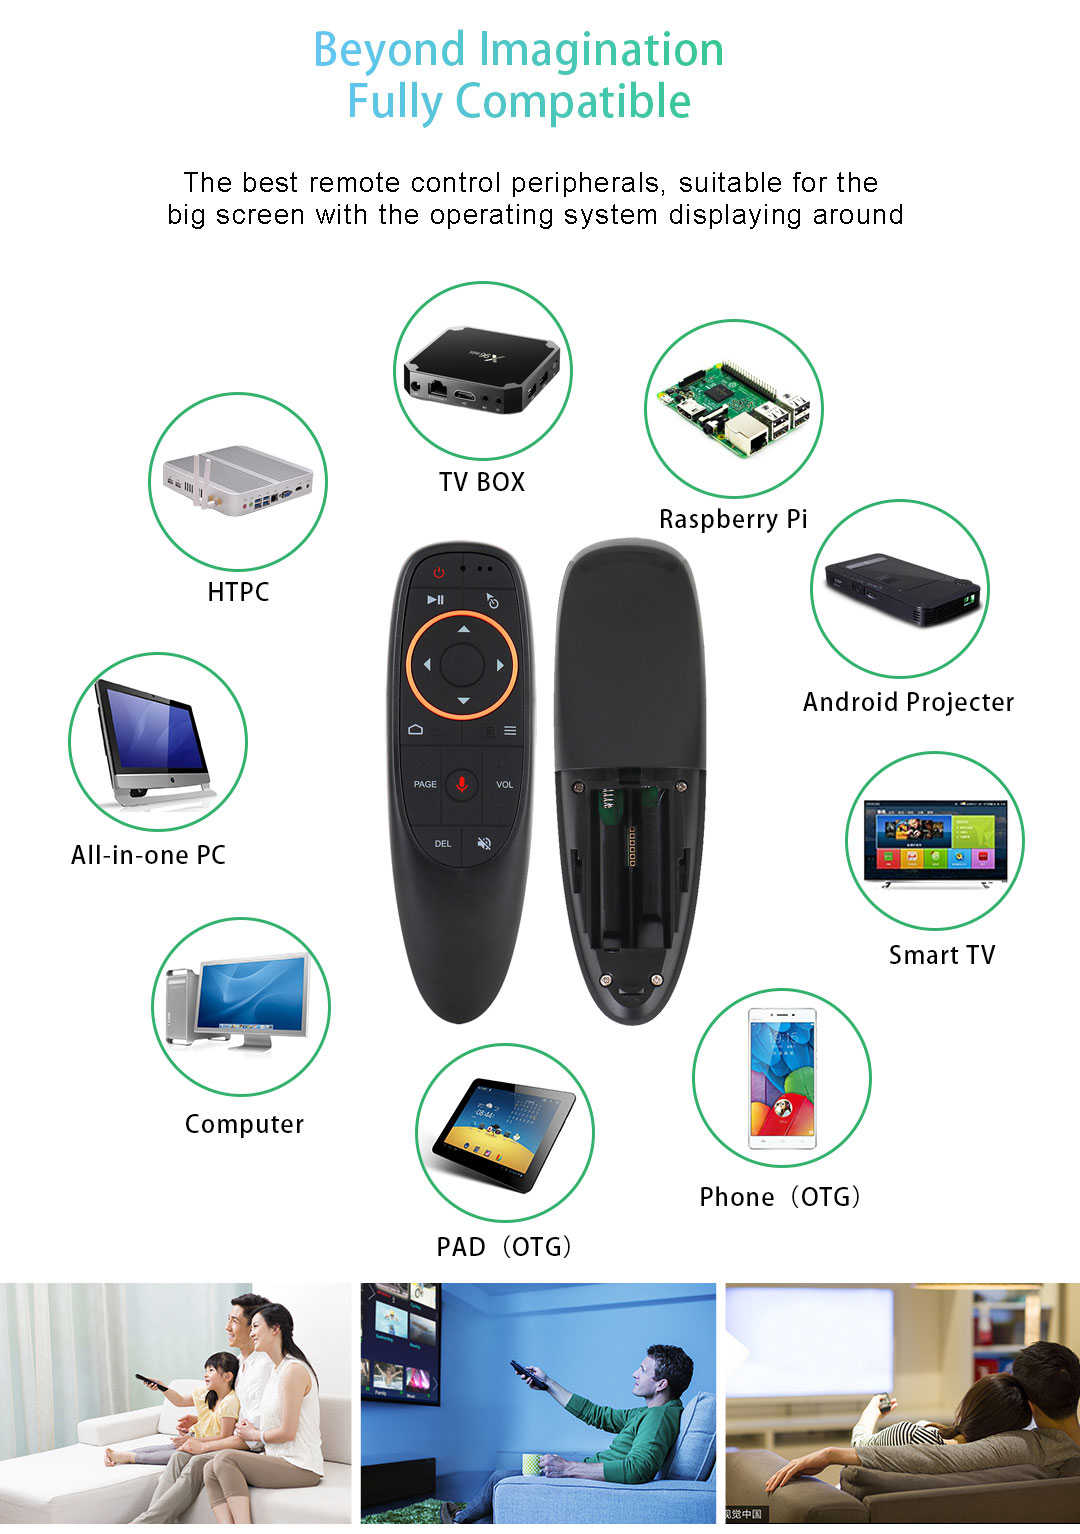 G10s語音飛鼠 2.4G無線智能air mouse 機上盒USB萬能語音遙控器(語音+體感)